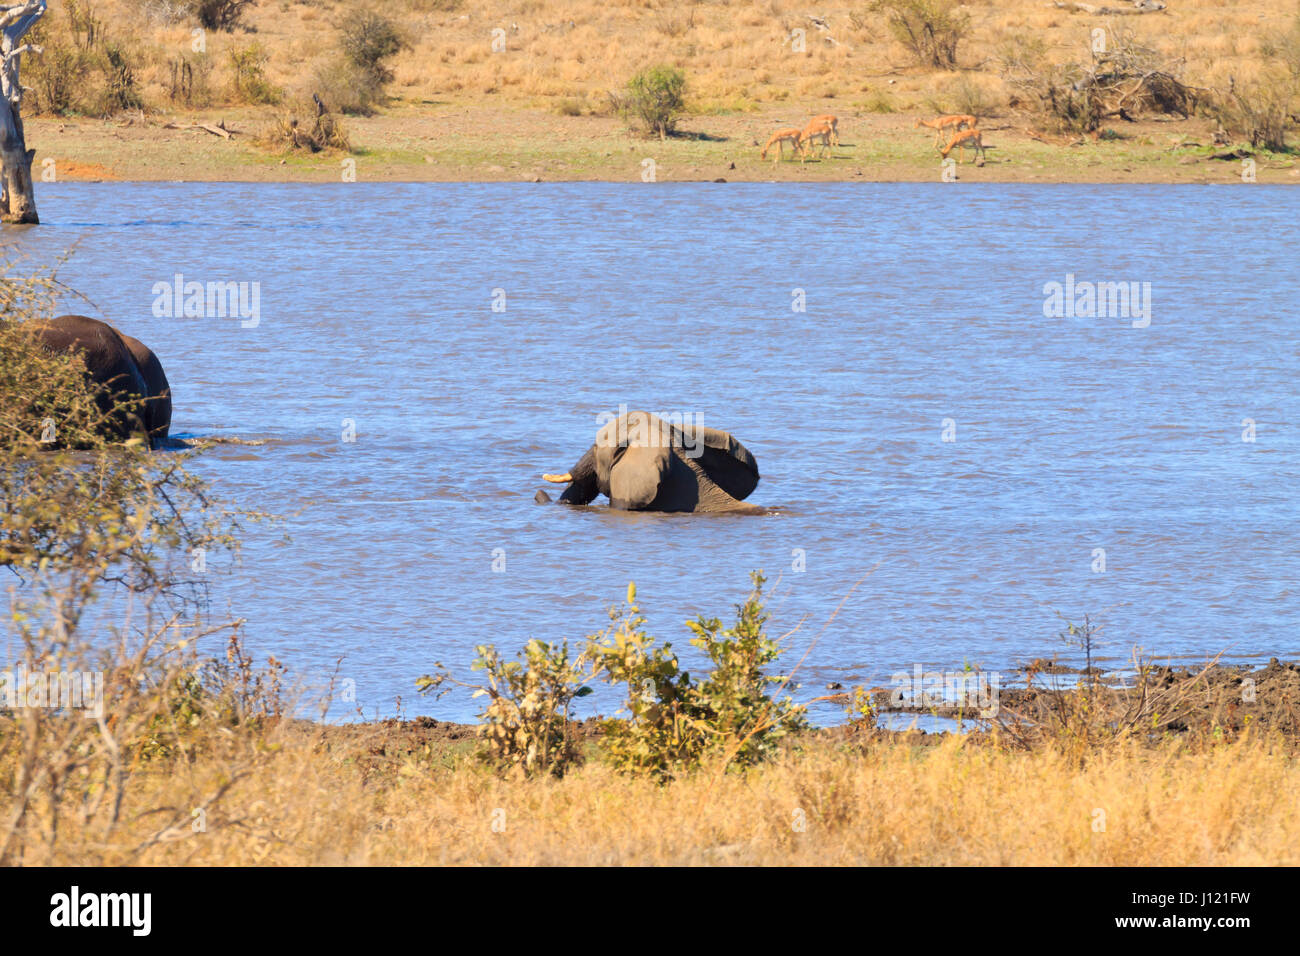 Elefant von Krüger Nationalpark, Südafrika. Afrikanische Tierwelt. Loxodonta africana Stockfoto